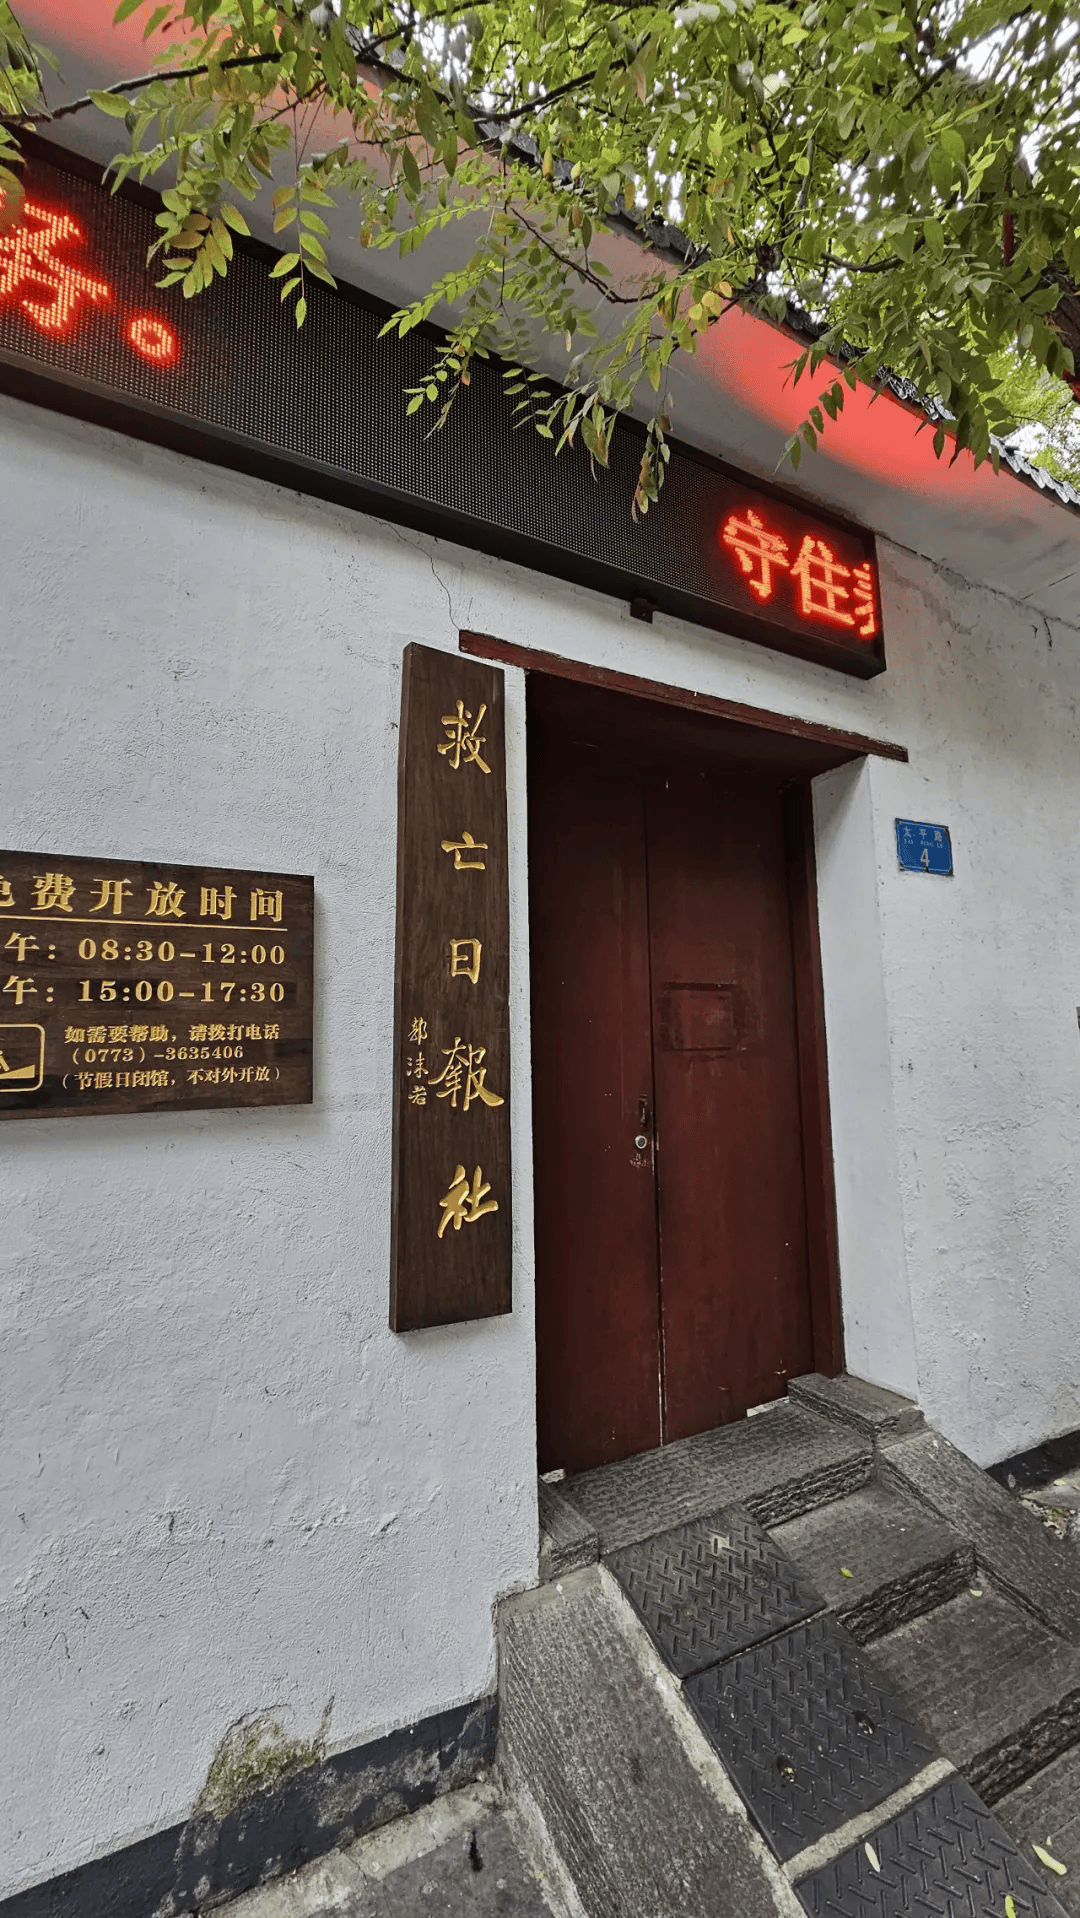 众多文化人物云集桂林,《救亡日报》社旧址就在今天的秀峰区太平路上